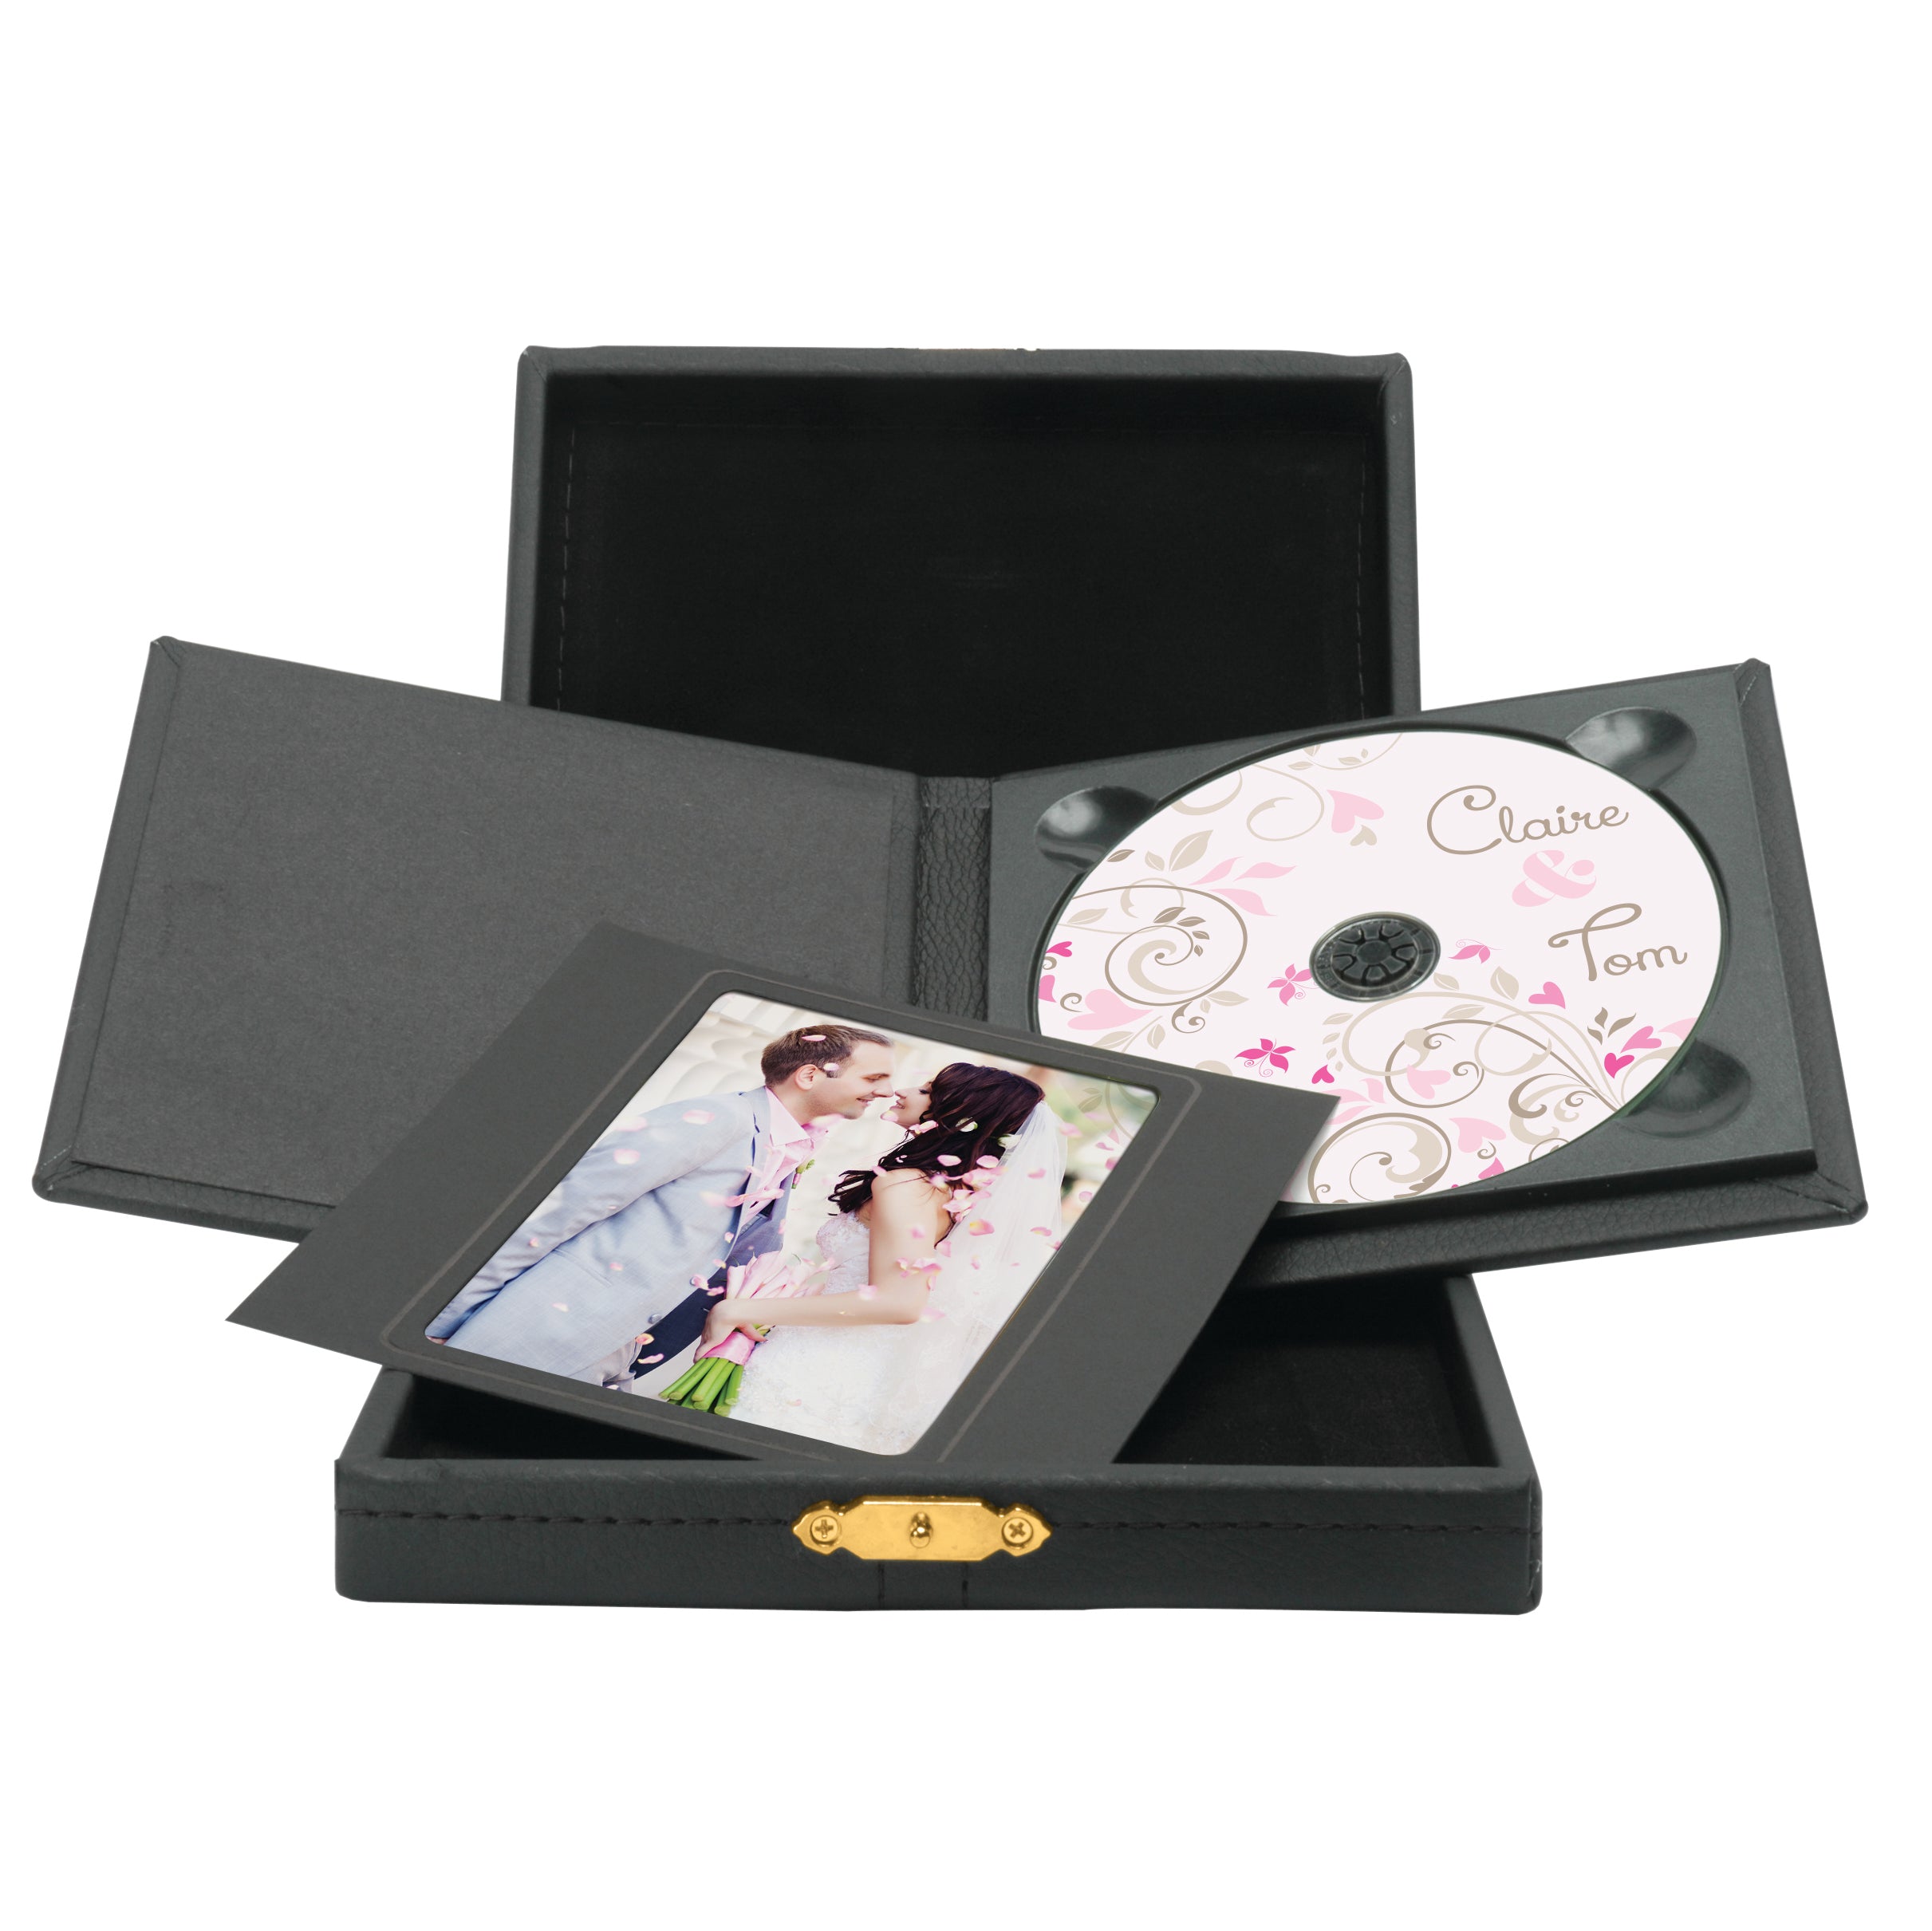 Folio de DVD/CD de lujo con caja de polipiel